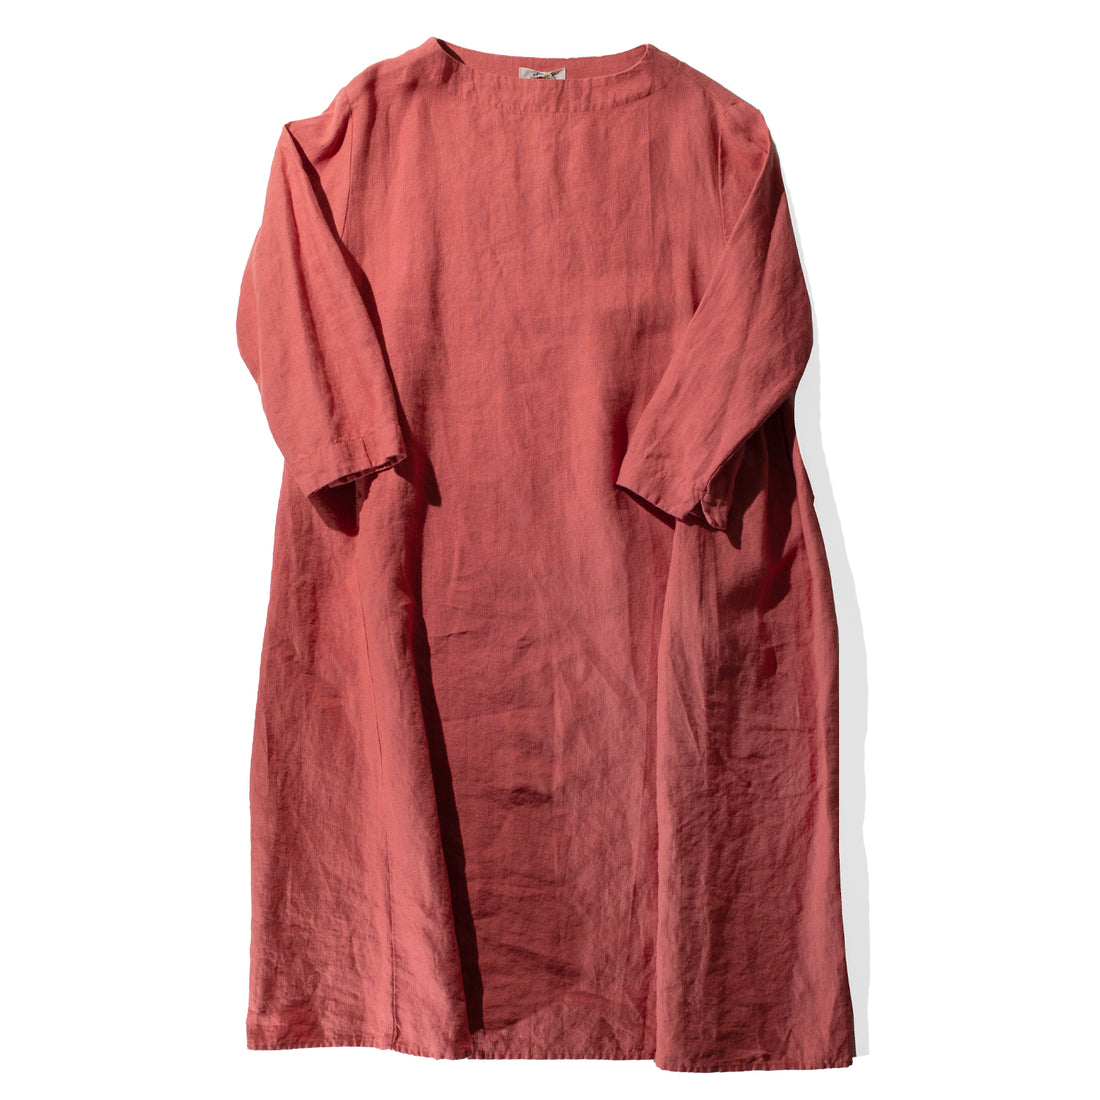 Ichi Antiquités Kortrijk Linen Dress in Pink